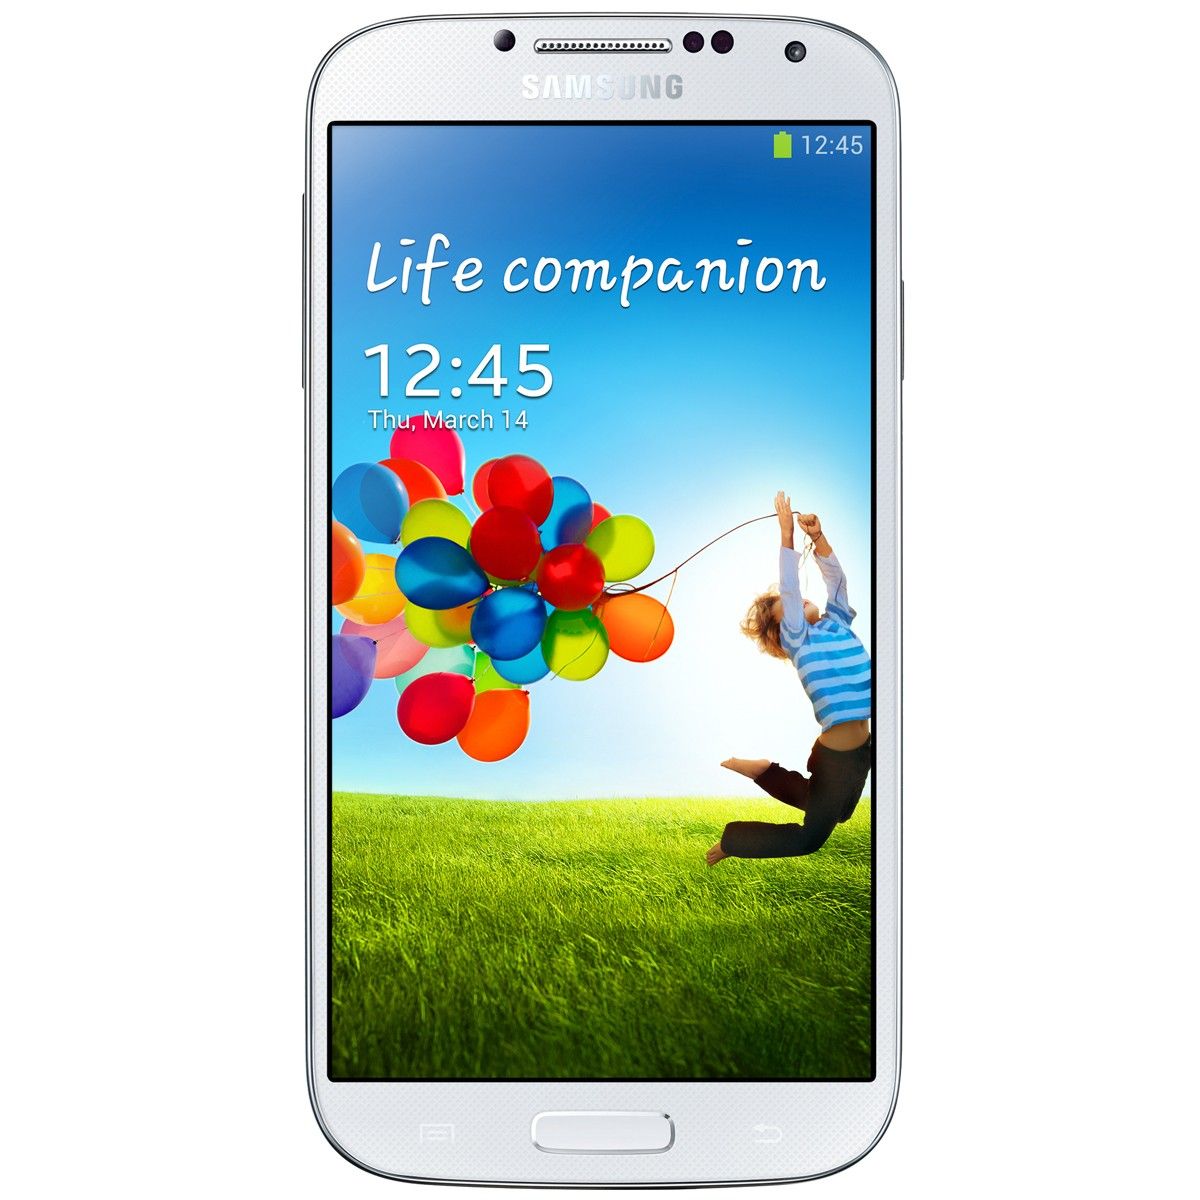 Samsung Galaxy S4 3G : Caracteristicas, precio, reviews y donde comprar